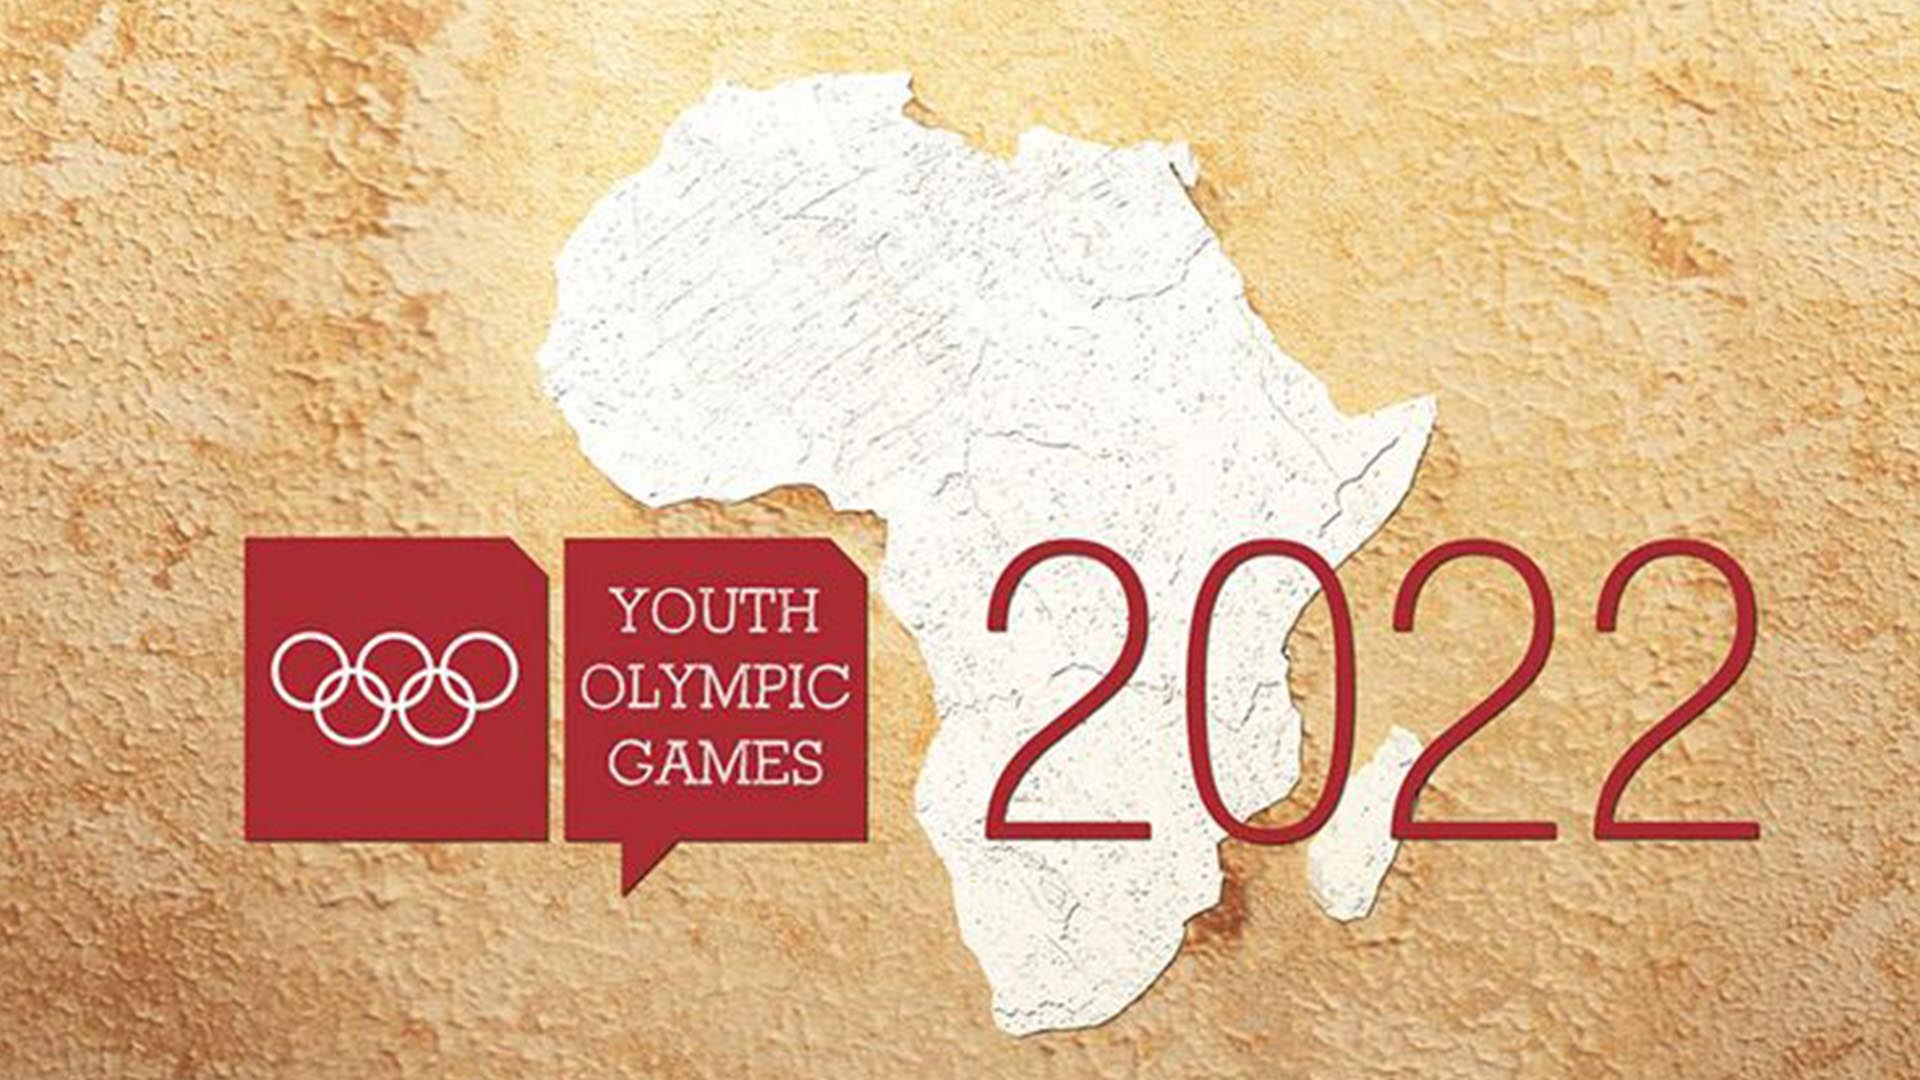 सन् २०२२ मा सेनेगेलमा आयोजना हुने भनिएको युथ ओलम्पिक खेल २०२६ मा सारियो